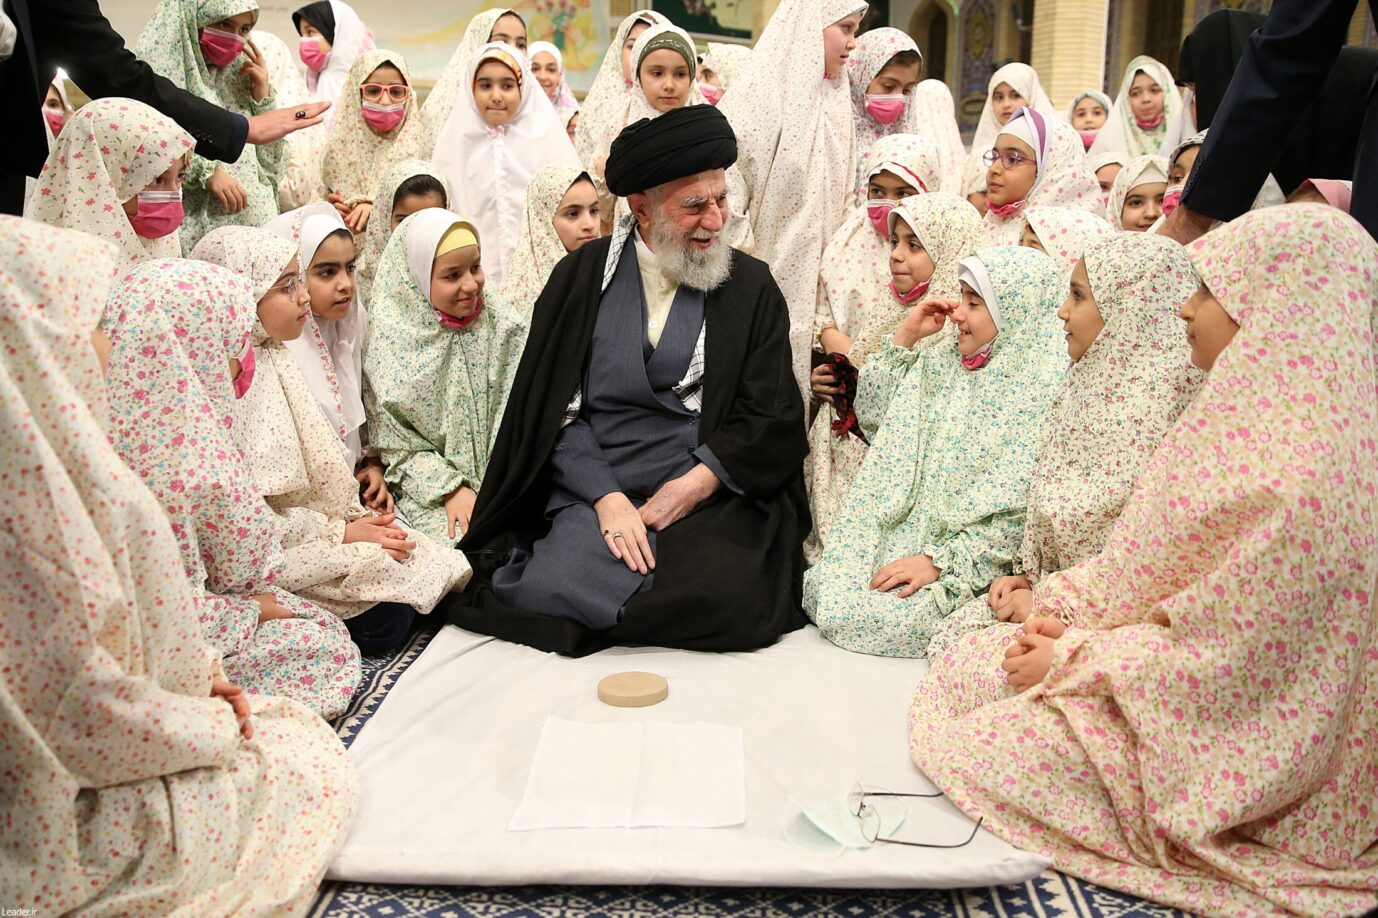 Der iranische Ayatollah Ali Khamenei läßt sich mit einer Gruppe Mädchen ablichten – hat die iranische Regierung es aus Rache auf die Kinder abgesehen?